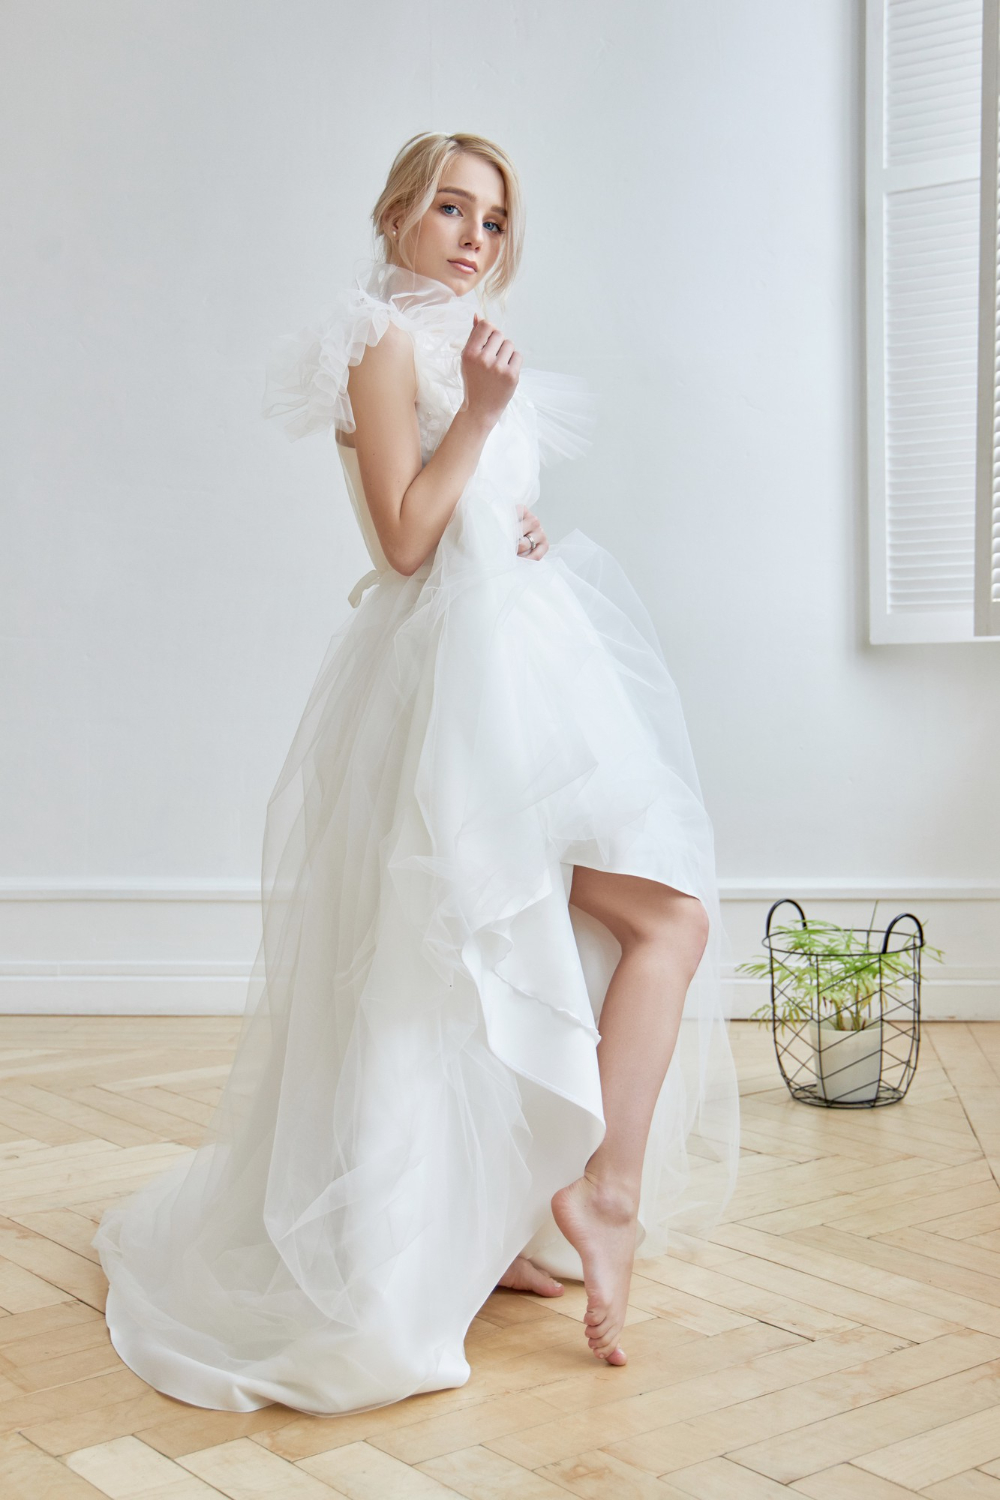 luxurious white wedding dress